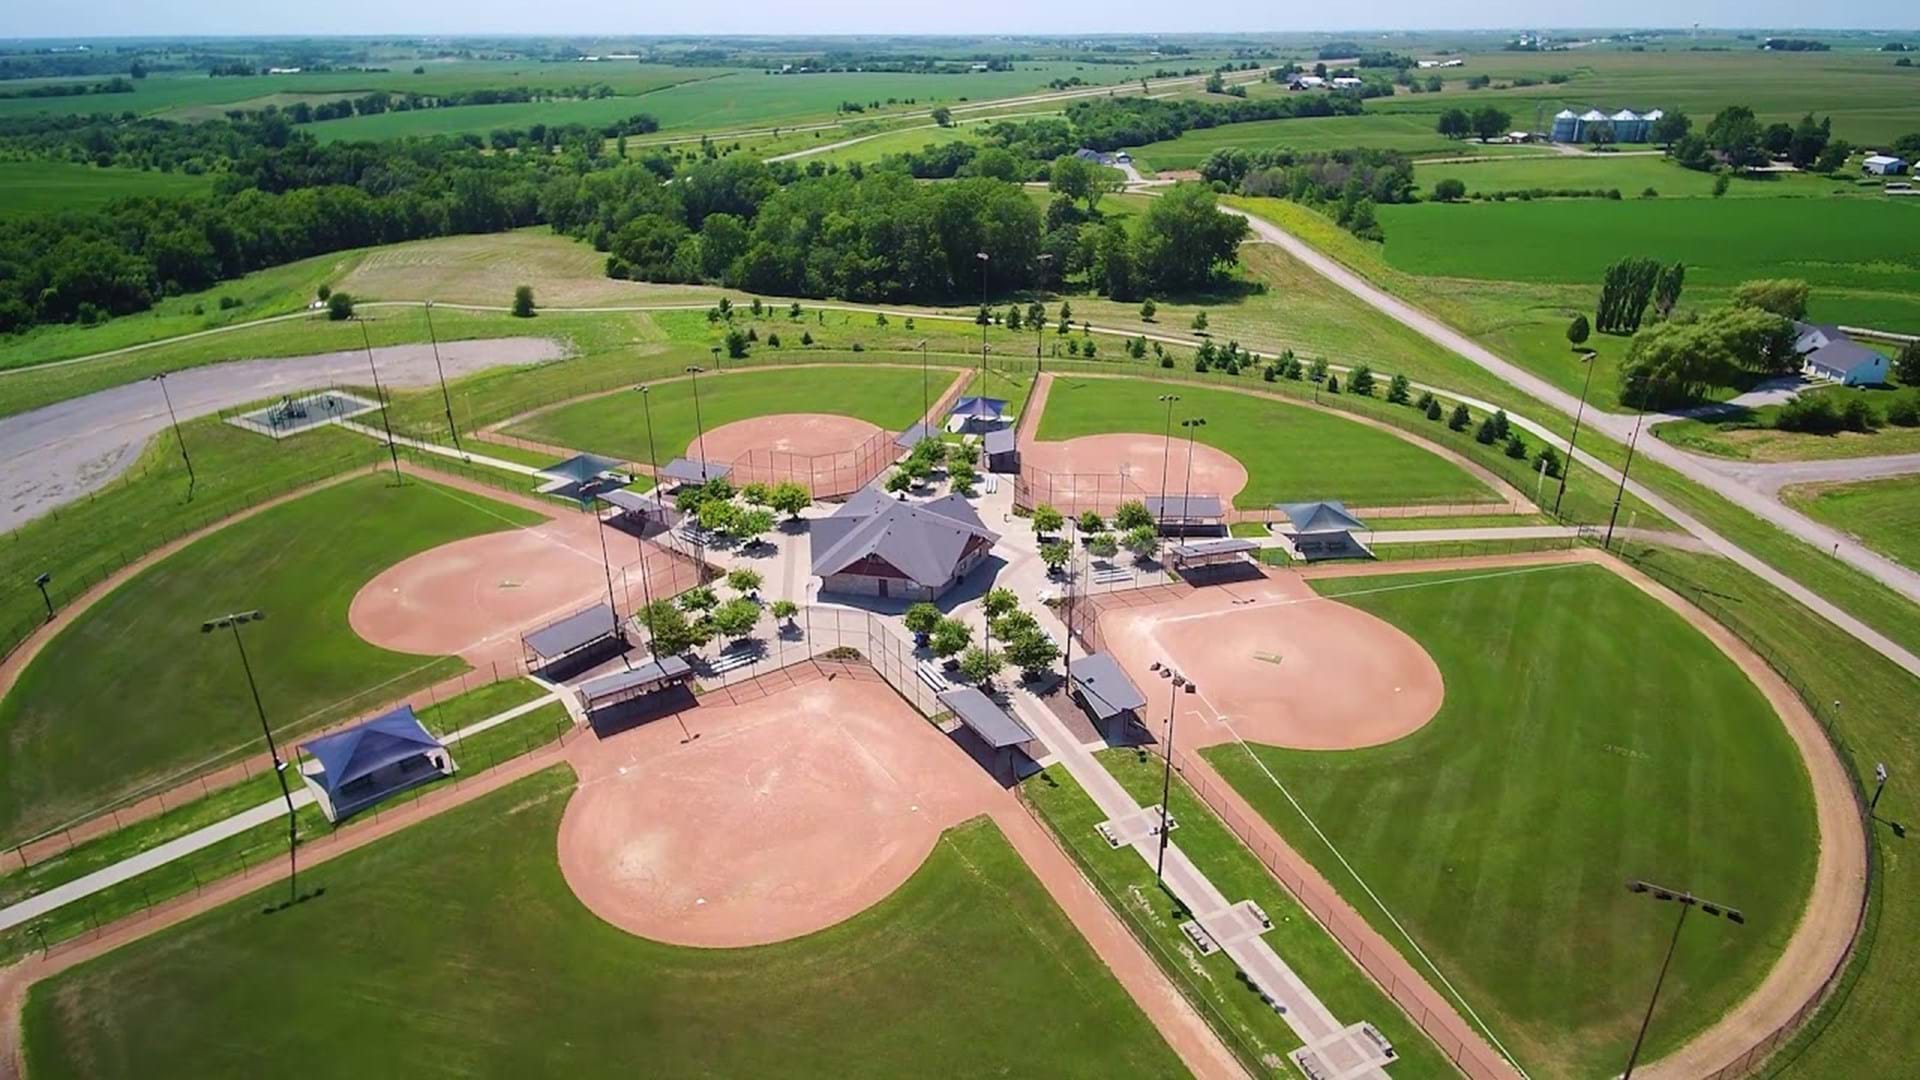 Lacey 5-plex: 5 softball/baseball fields; 3 new baseball fields will open summer 2023